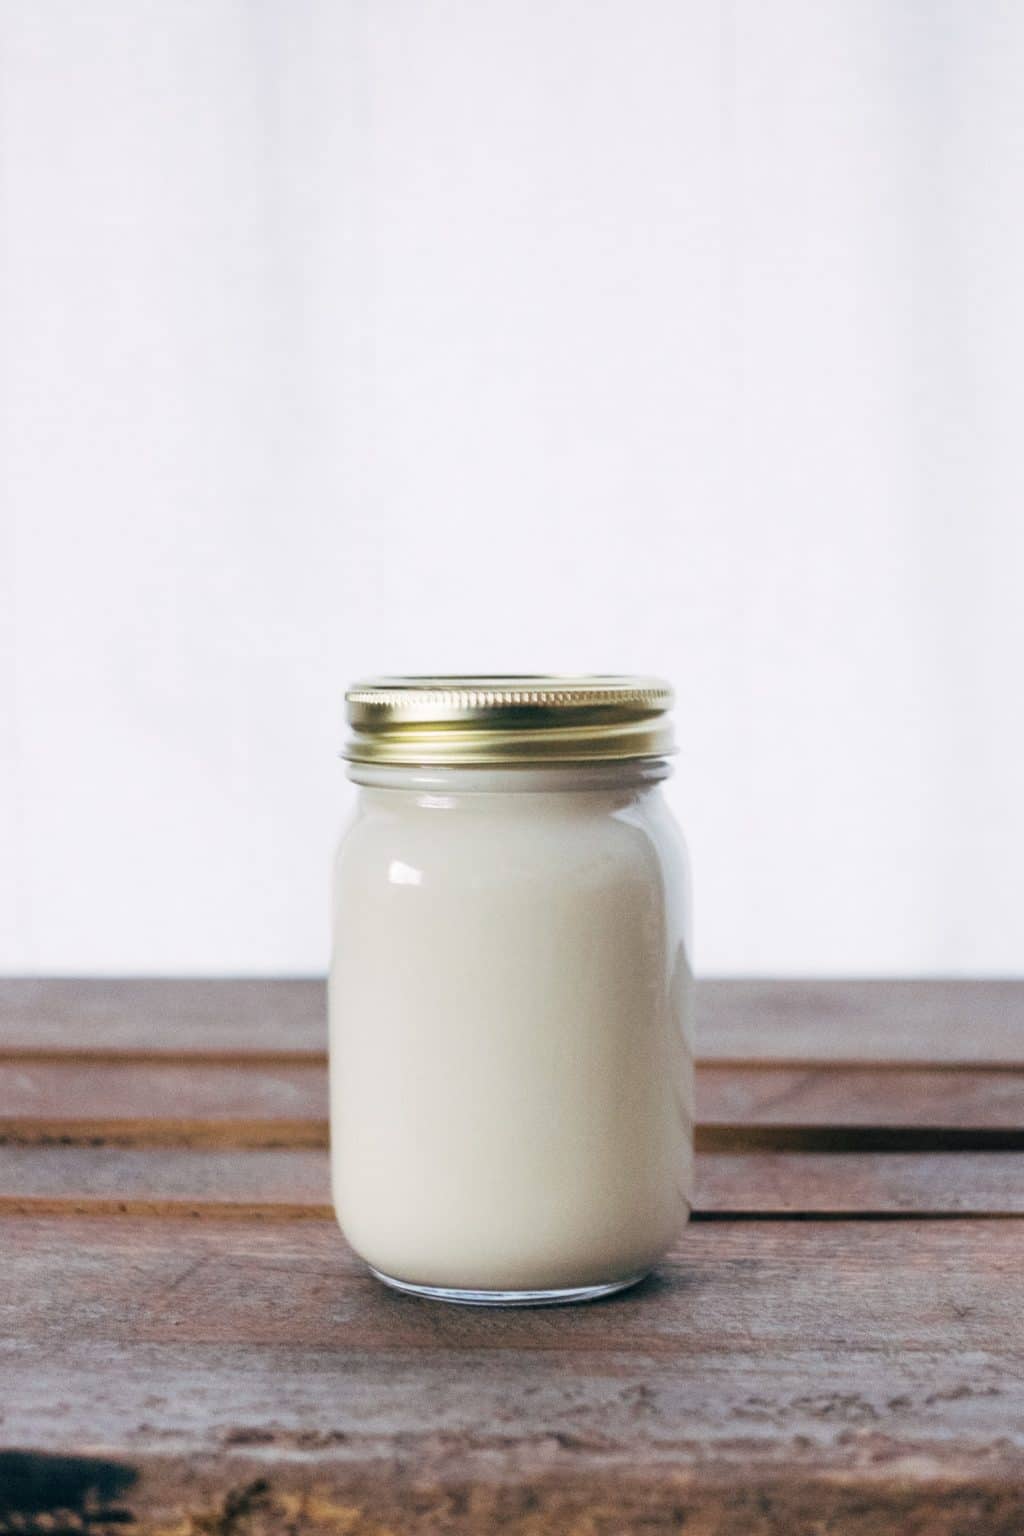 A tejsavas fermentáció csodája: Hogyan függ össze az erjesztés, a probiotikumok és az egészségünk?